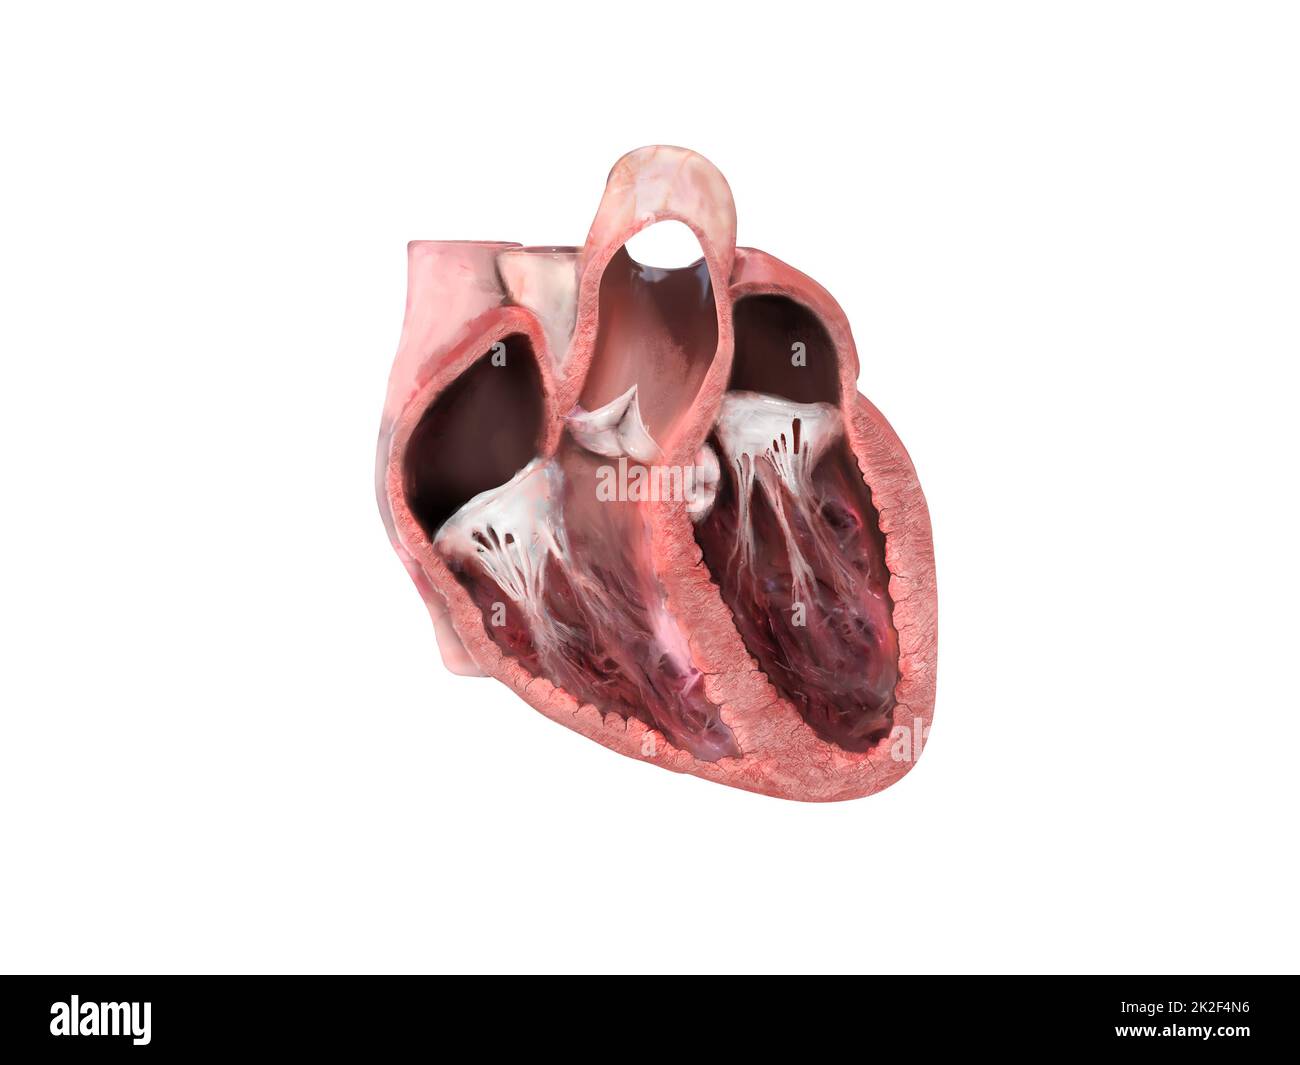 Die Anatomie des menschlichen Herzens. Schulungsdiagramm, das den Blutfluss mit markierten Hauptteilen zeigt. Anatomischer Herzabschnitt, rechter und linker Ventrikel und Septum, Herzklappe, Herzinfarkt, Herzprobleme, 3D-Rendering Stockfoto